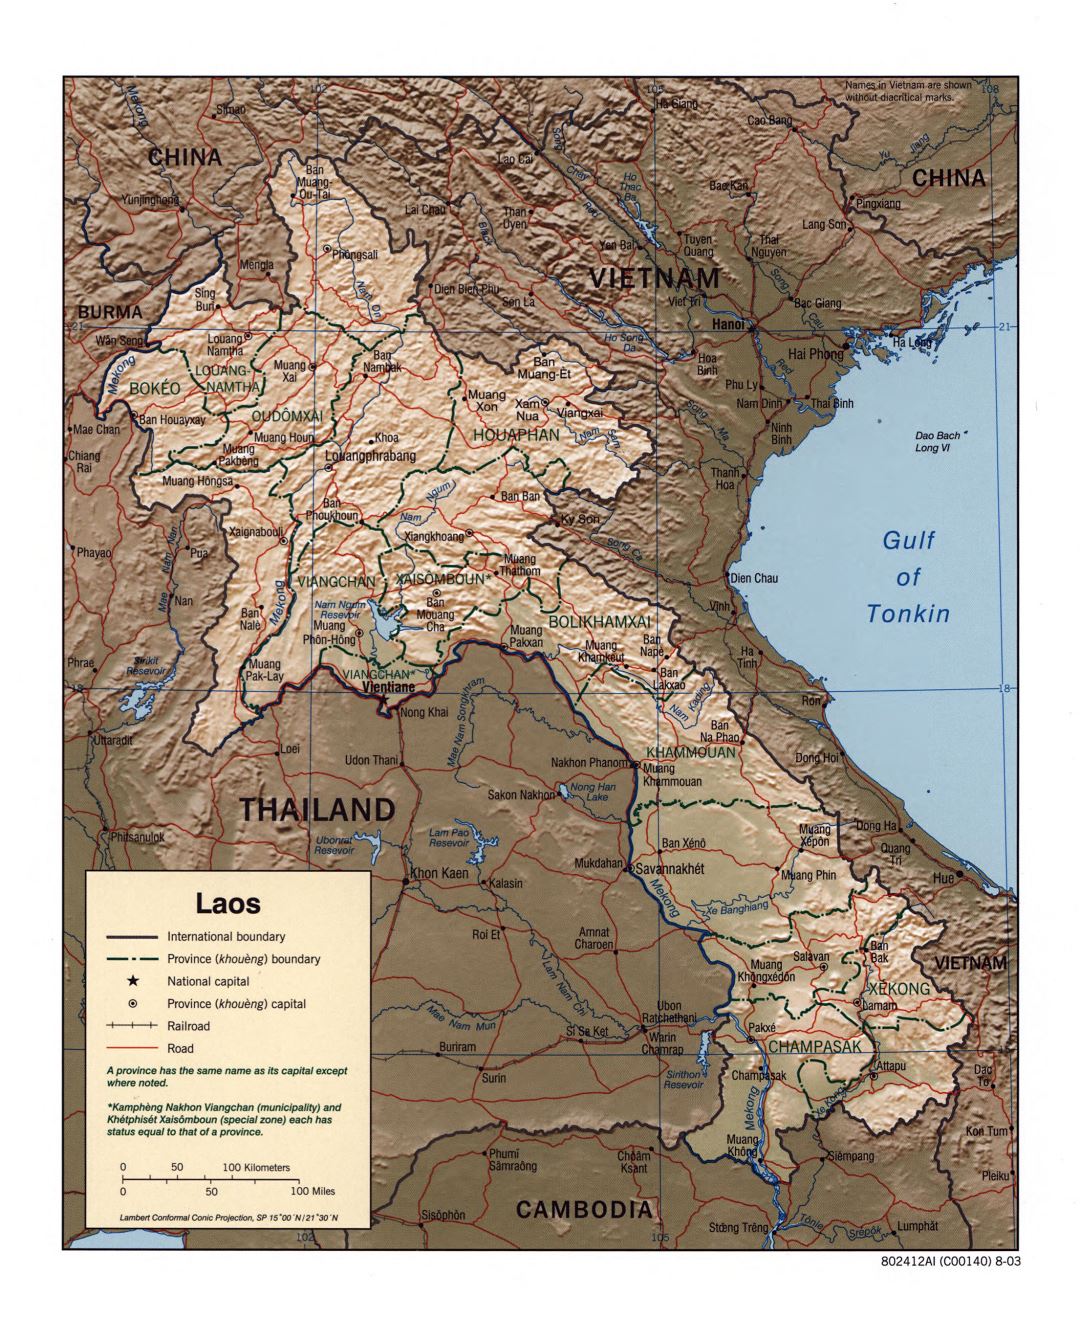 Grande detallado mapa político y administrativo de Laos con socorro, carreteras, ferrocarriles y principales ciudades - 2003